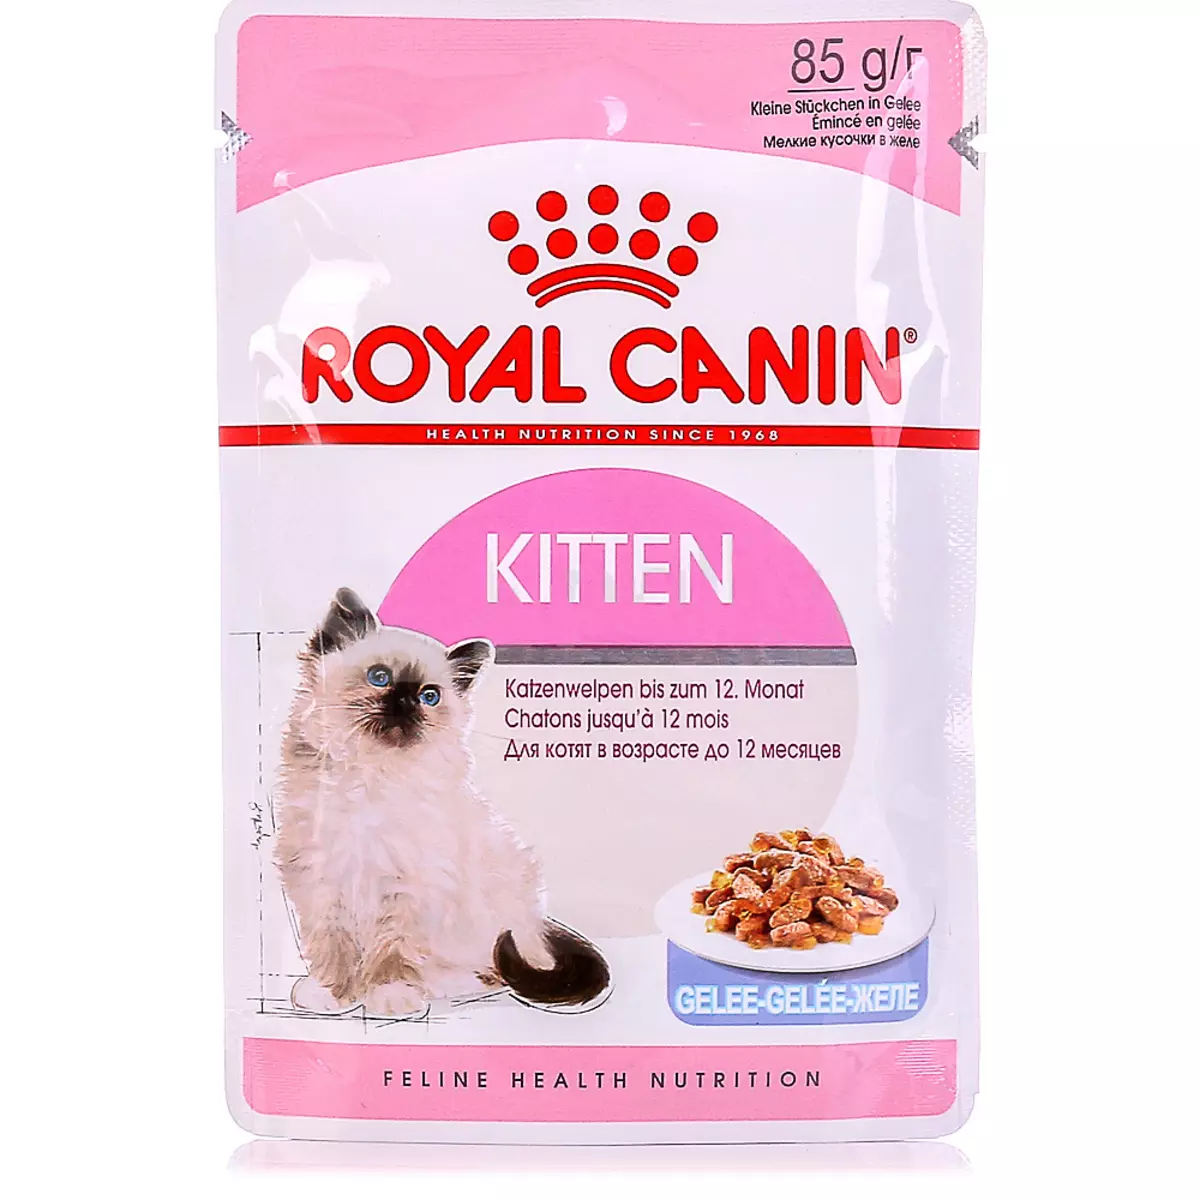 Kuiva ruoka Kissanpensioille Royal Canin: Kissan koostumus jopa 12 kuukautta, syöttö steriloitu pentuja. Se haisee heidät? Annos 22012_7